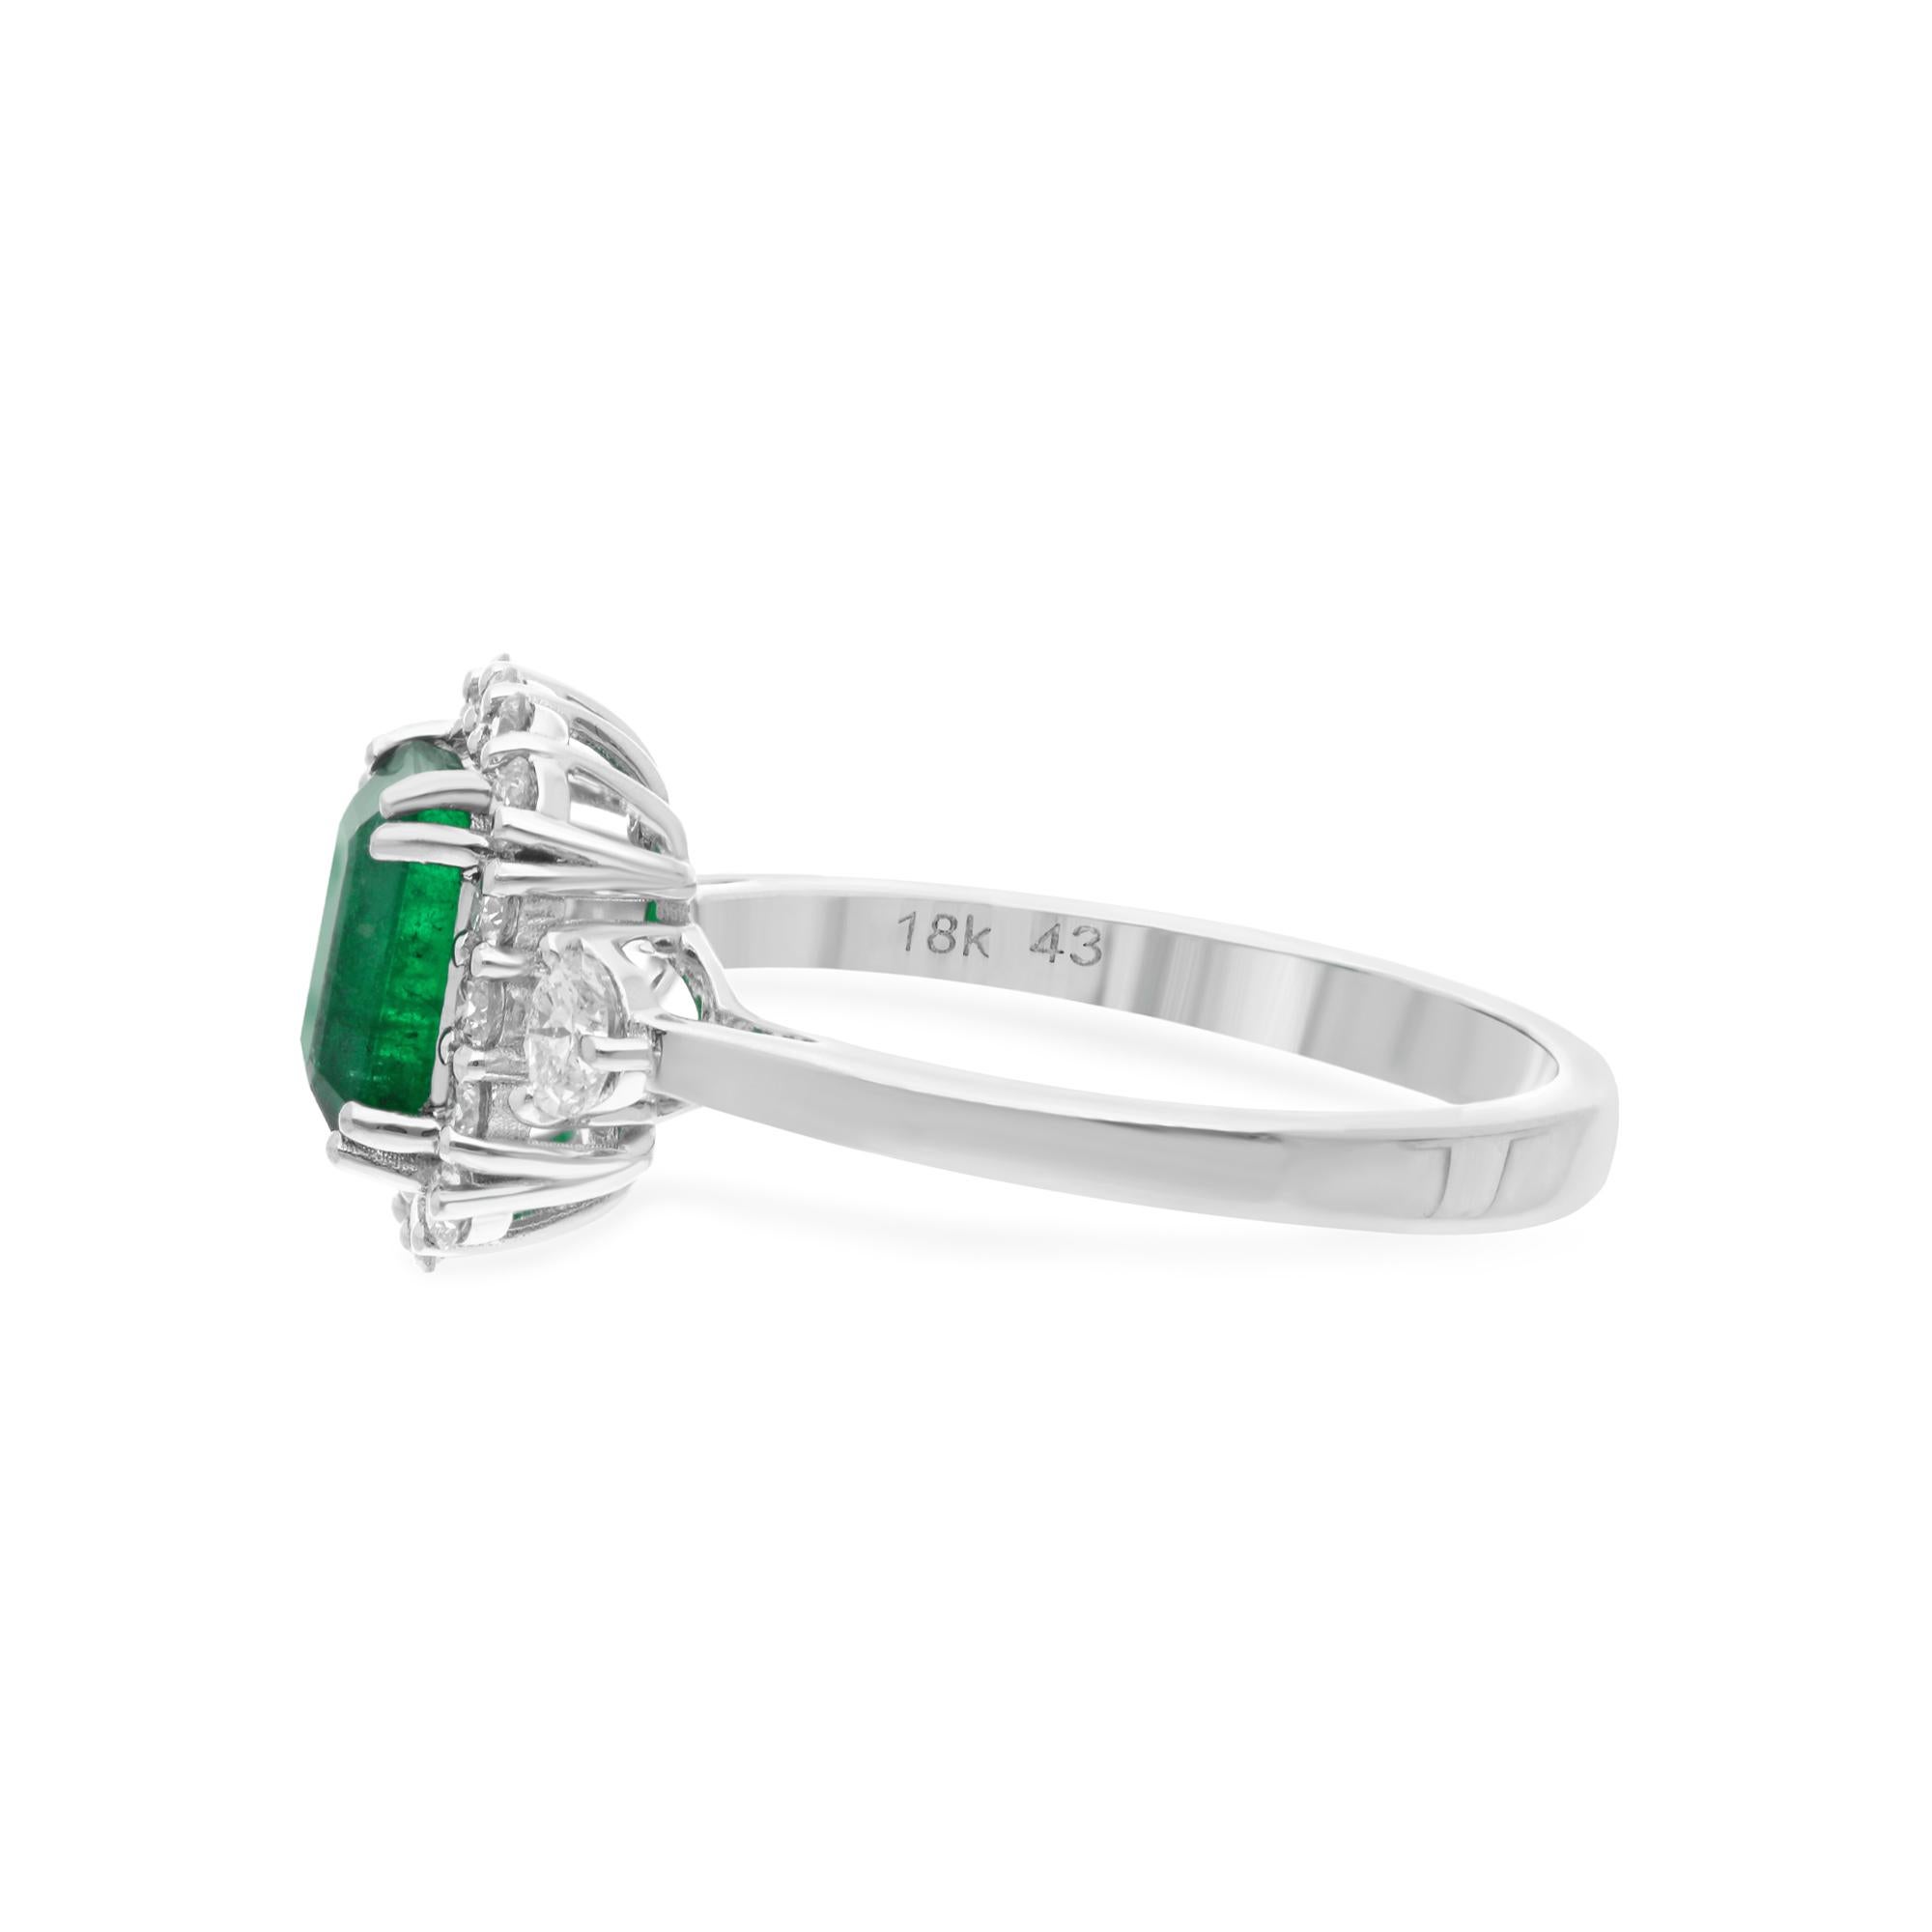 Treten Sie ins Rampenlicht mit der hypnotisierenden Anziehungskraft des Cocktailrings mit sambischem Smaragd und Diamanten, der aus luxuriösem 18 Karat Weißgold gefertigt ist. Dieser exquisite Ring ist ein wahres Schmuckstück, das die Blicke auf